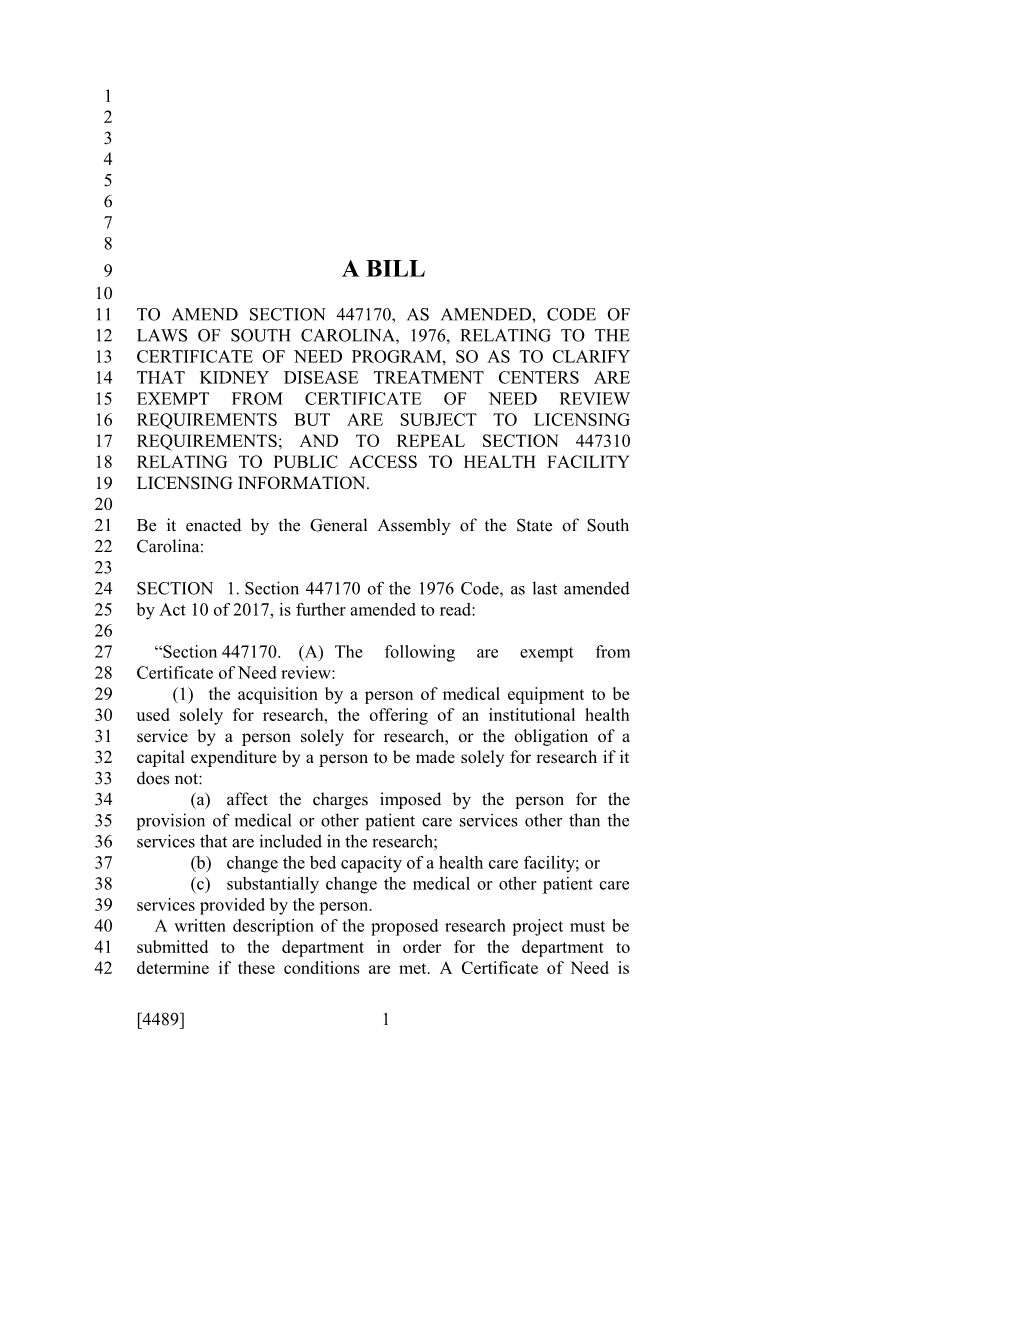 2017-2018 Bill 4489 Text of Previous Version (Dec. 13, 2017) - South Carolina Legislature Online